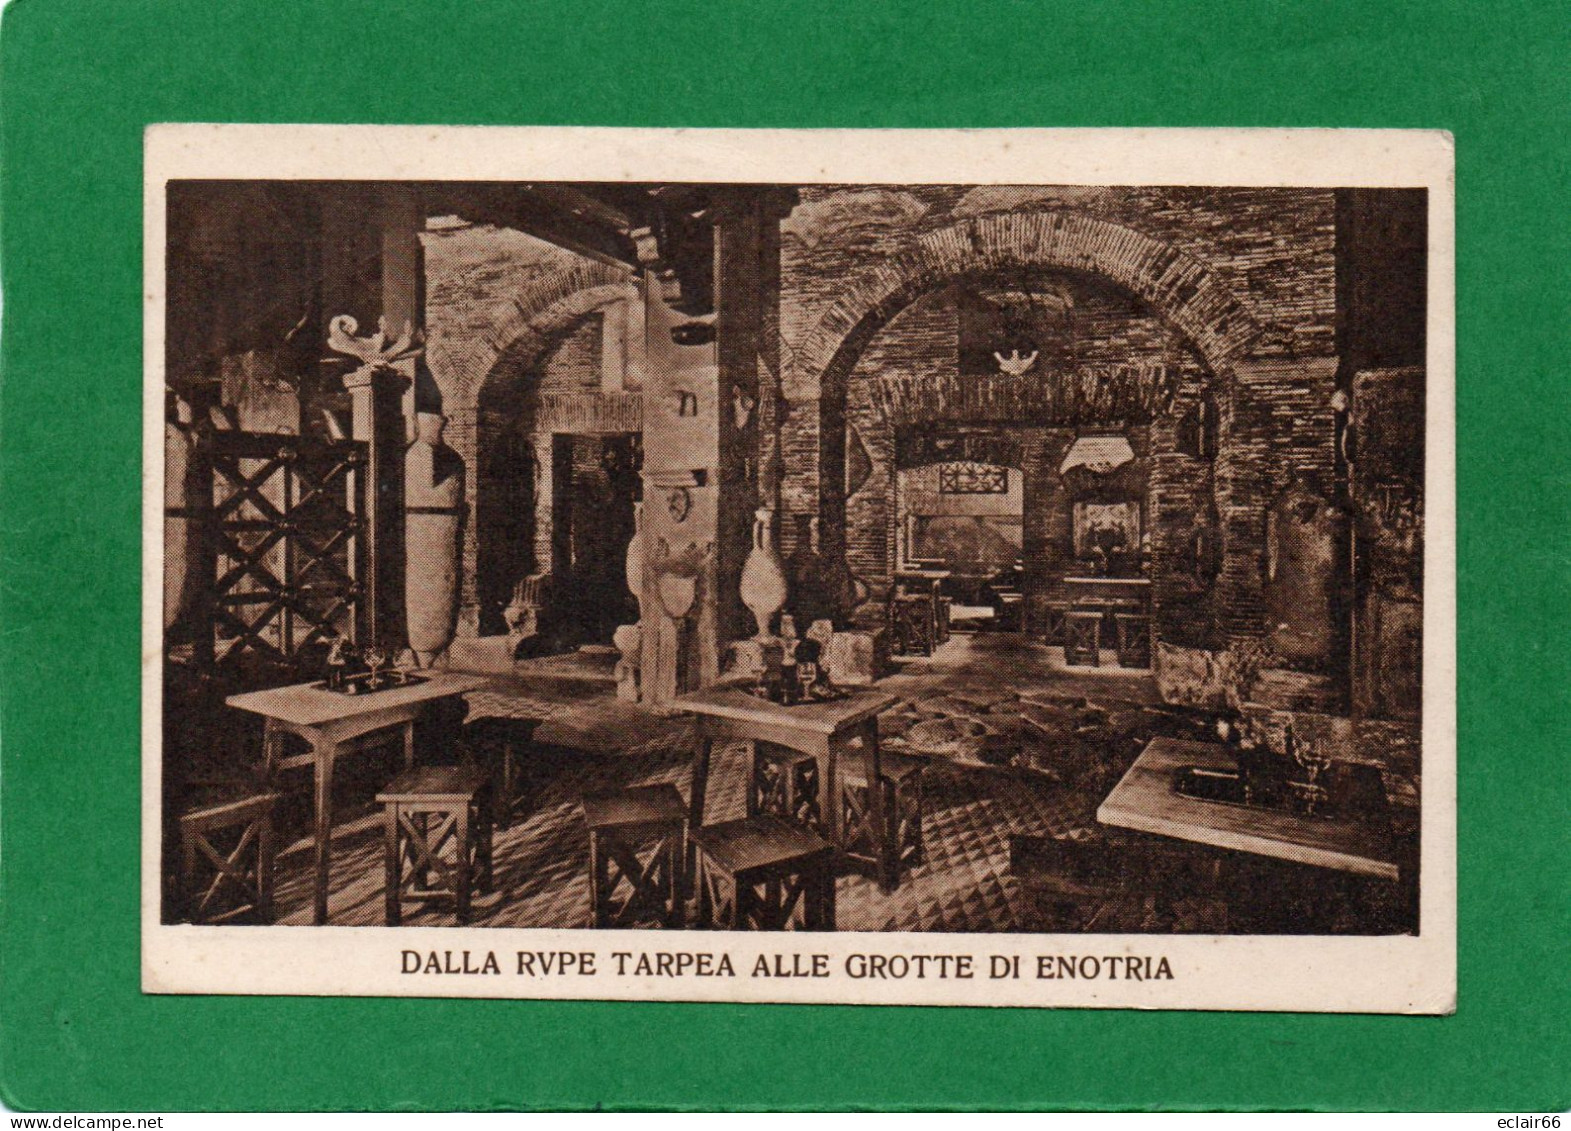 Dalla Rupe Tarpea Alle Grotte Di Enotria” Roma Via Vittorio Veneto N°13 – Prop. Luigi Falcioni – Foto Vasari  Impeccable - Bar, Alberghi & Ristoranti